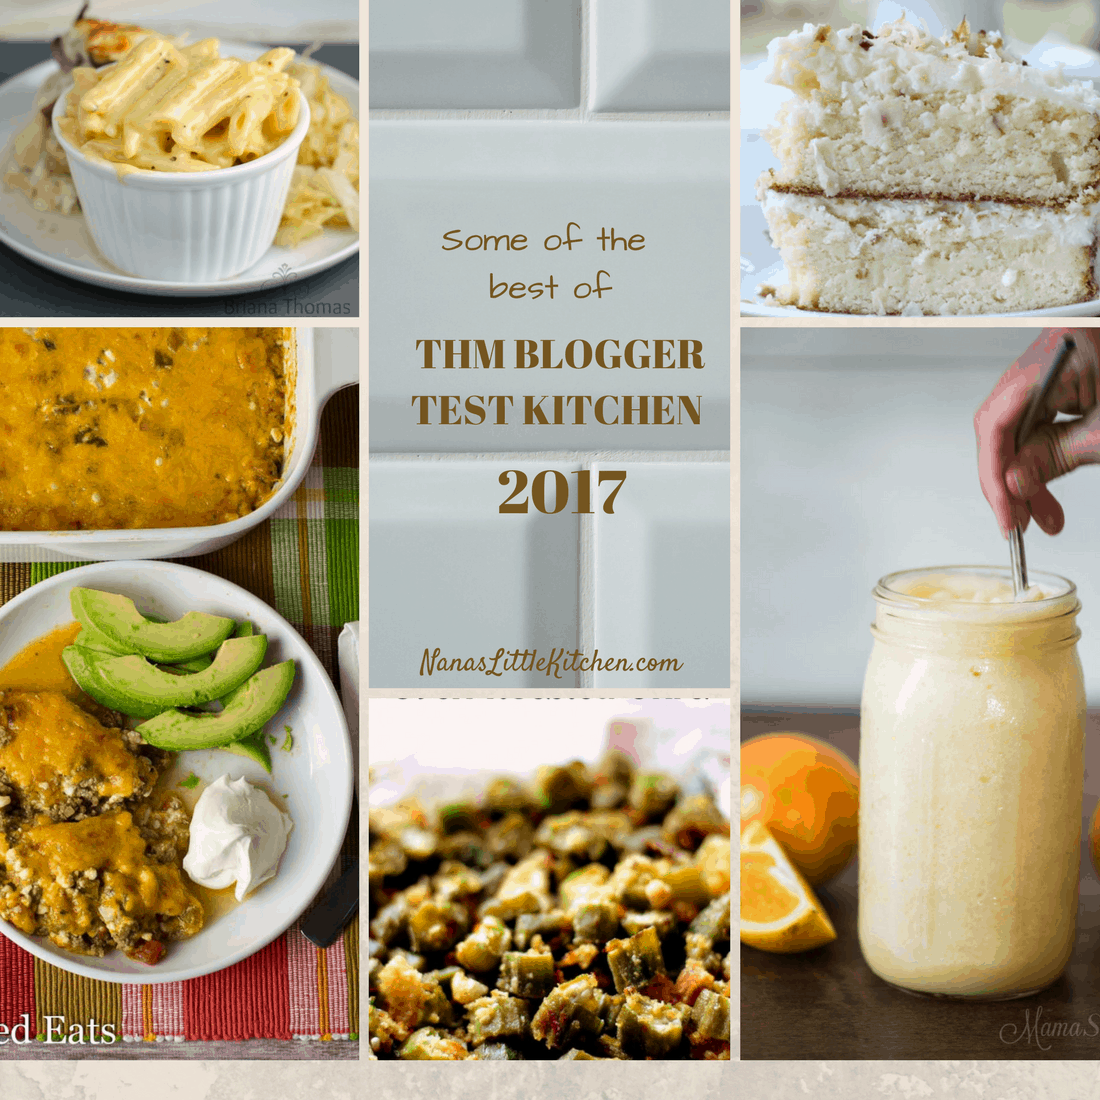 Best of THM Blogger Test Kitchen 2017